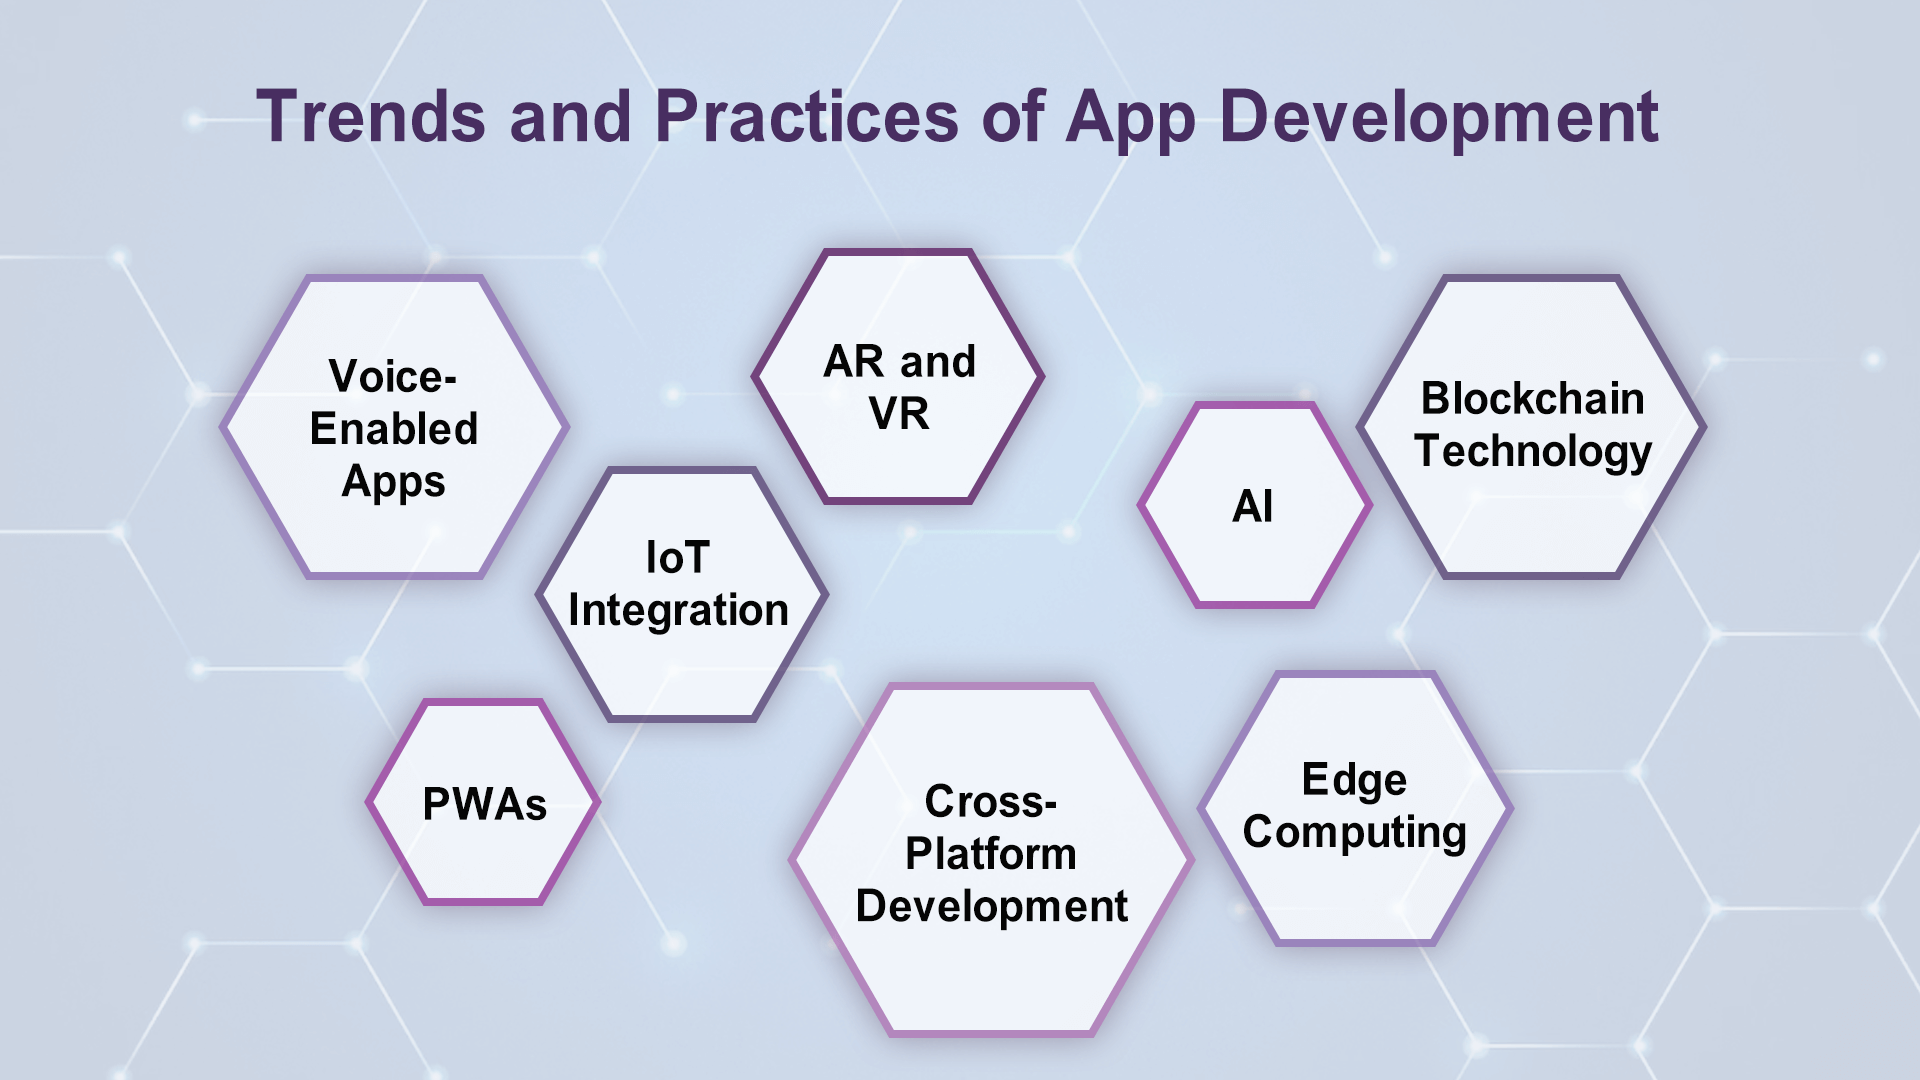 Mobile App Development: Top Practices, Tools, & Benefits 9